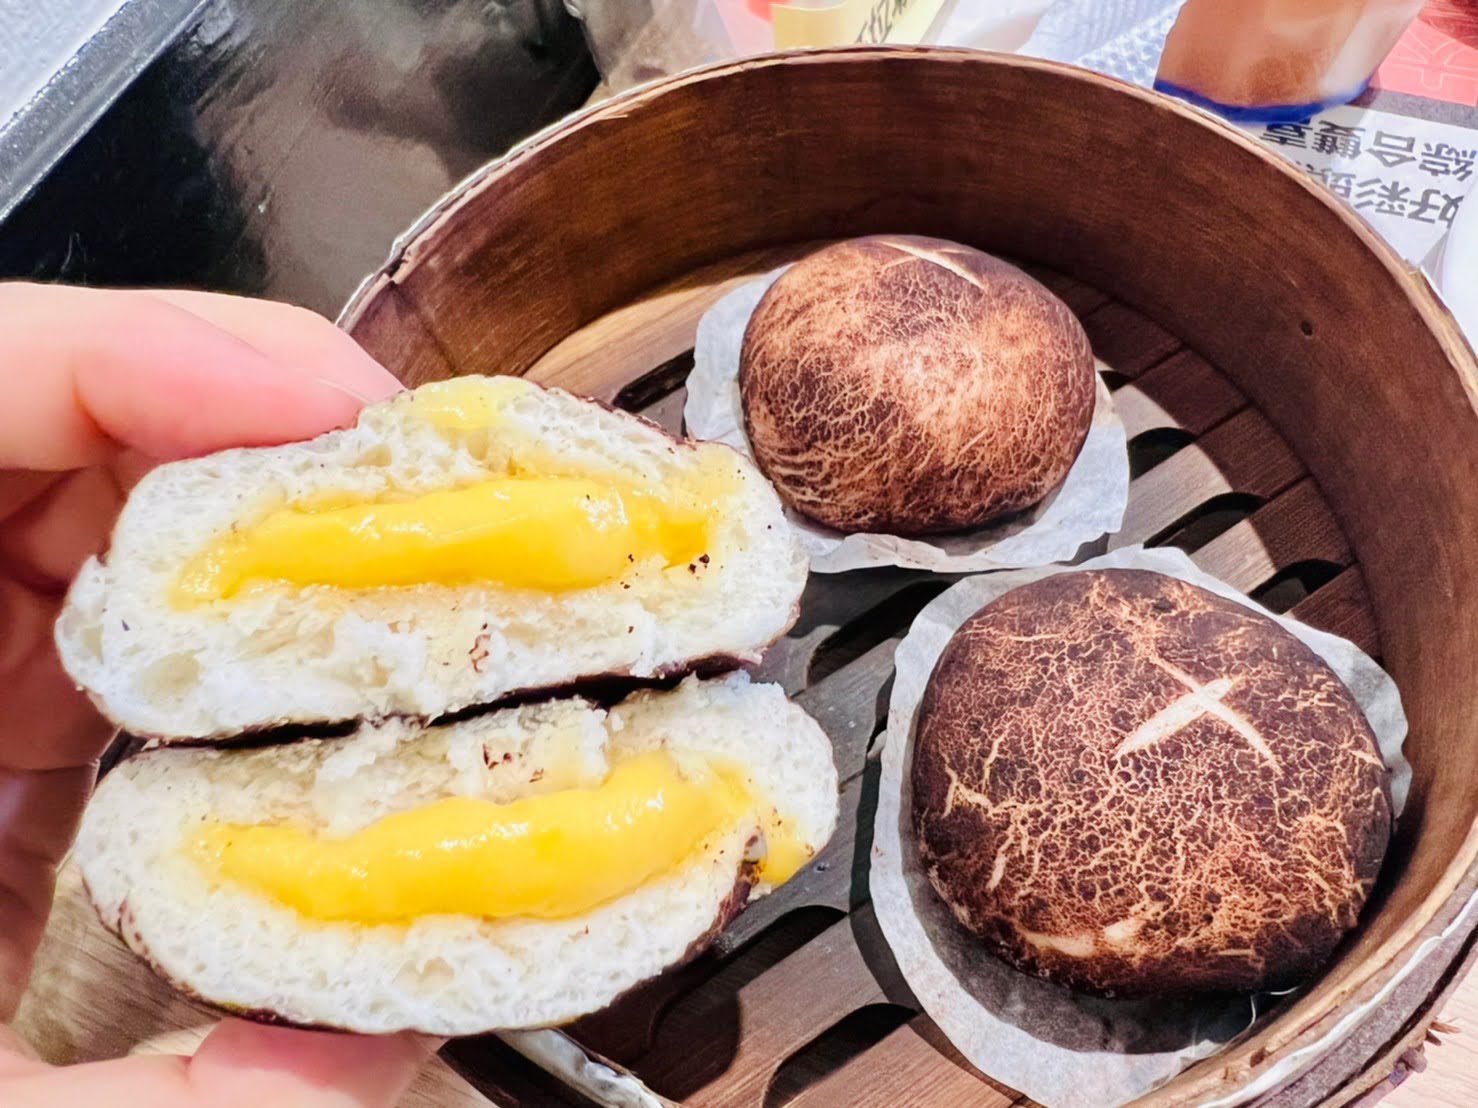 新竹區美食 港式飲茶推薦 小籠包蘿蔔糕腸粉燒賣必吃茶餐廳